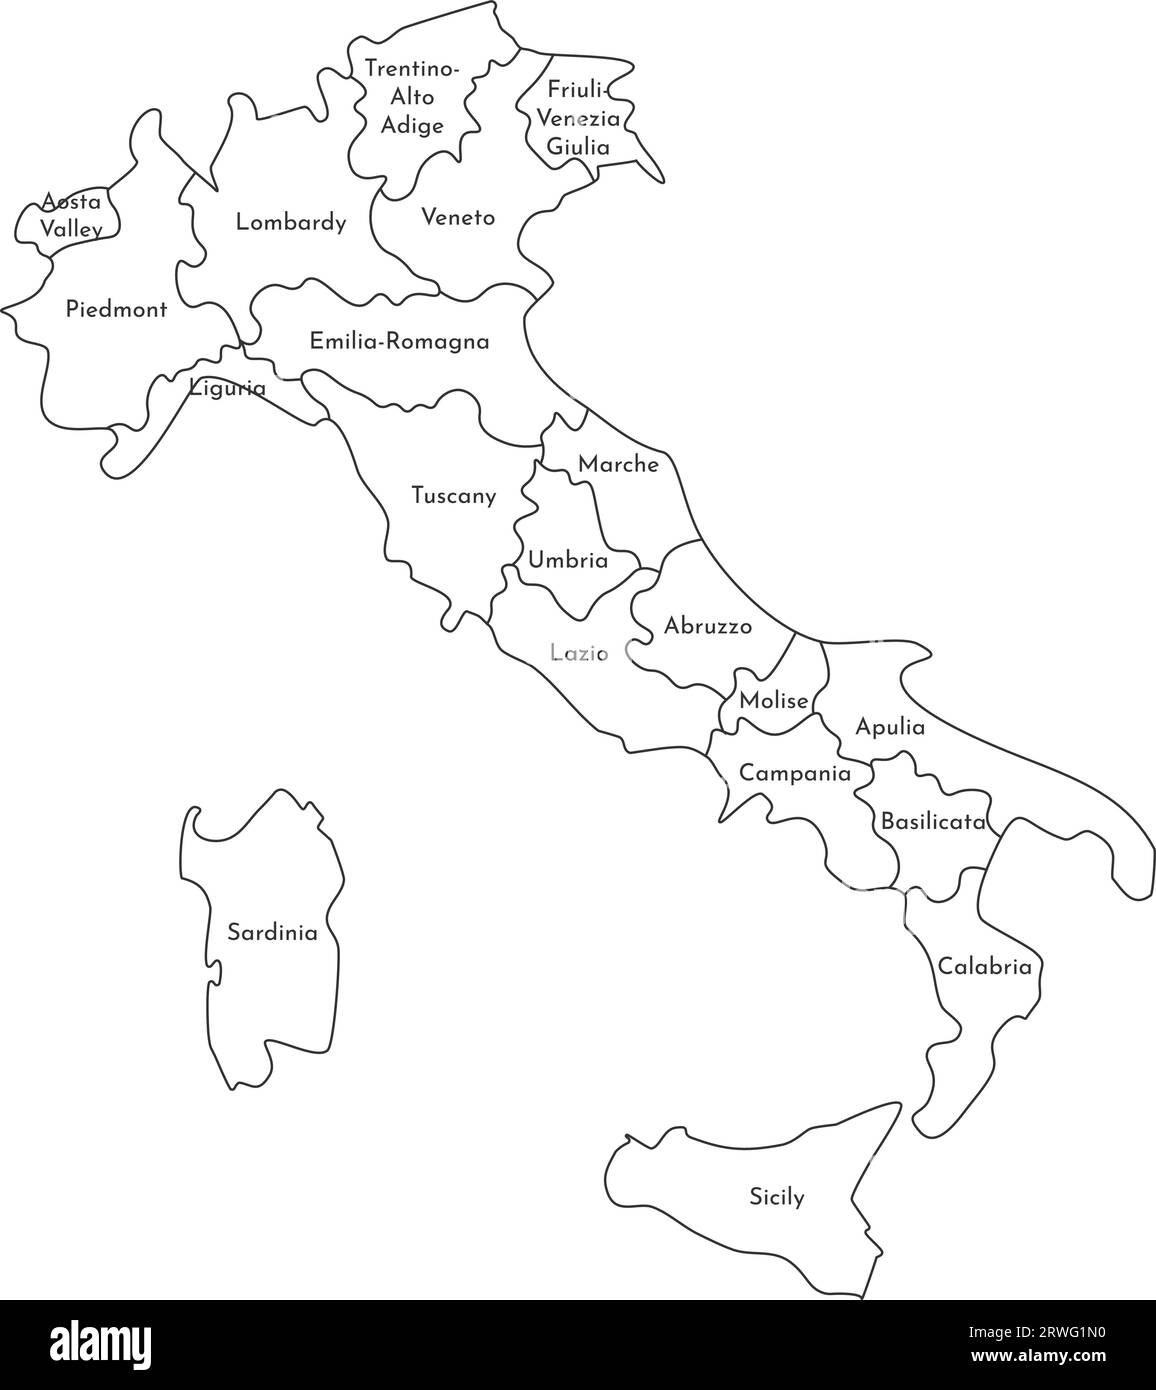 Vektorisolierte Darstellung einer vereinfachten Verwaltungskarte Italiens. Grenzen und Namen der Regionen. Silhouetten mit schwarzen Linien. Stock Vektor